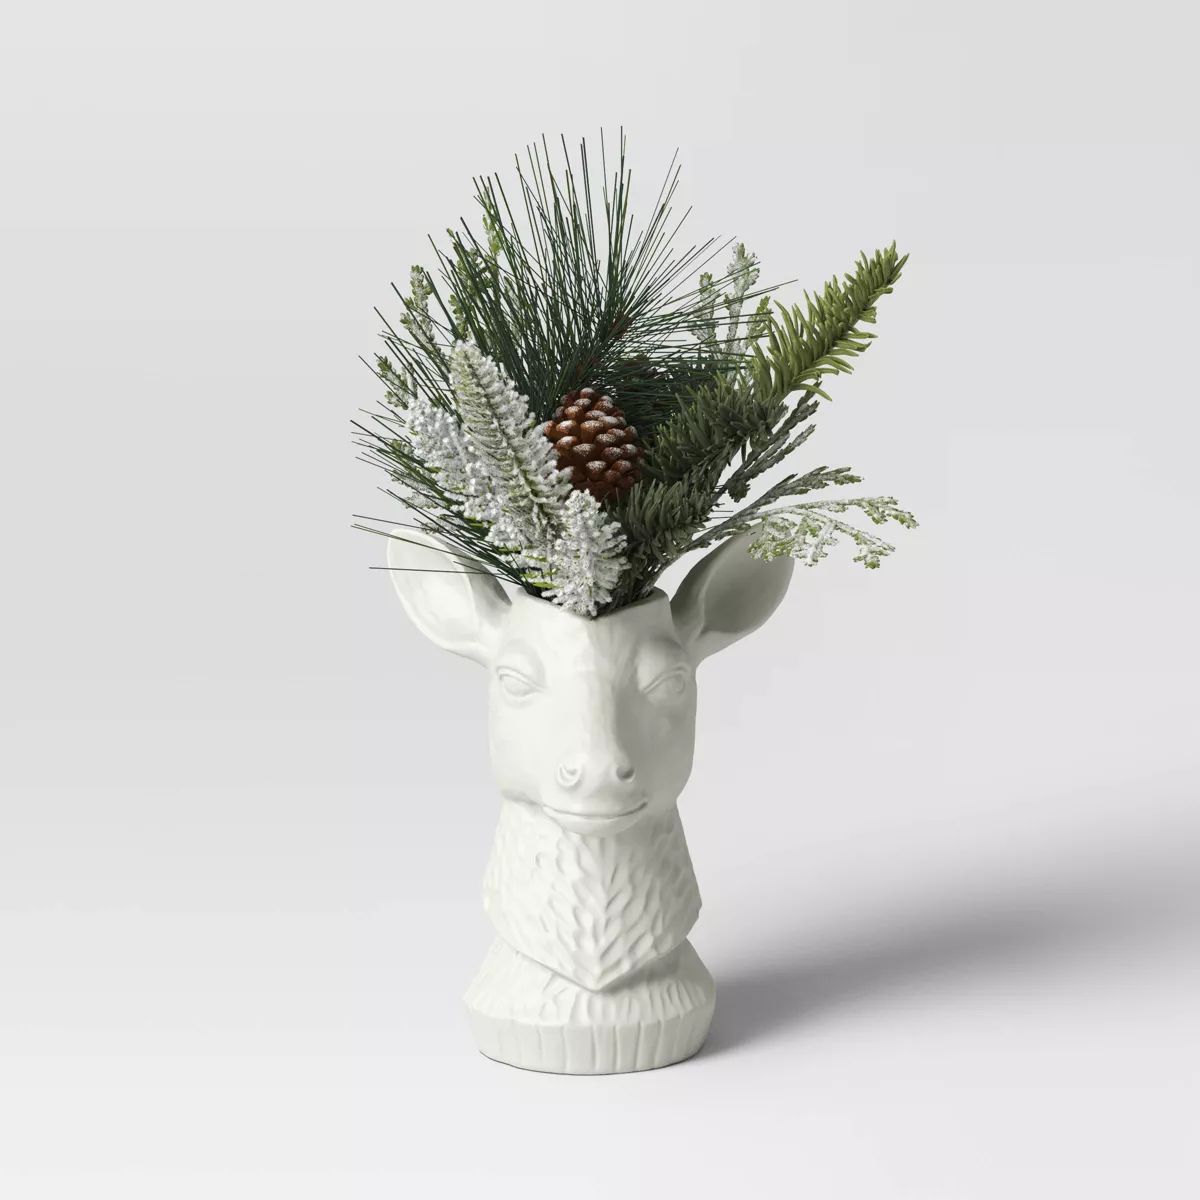 14" Potted Mixed Greenery in Deer Vase Christmas Artificial Plant - Wondershop™ | Target